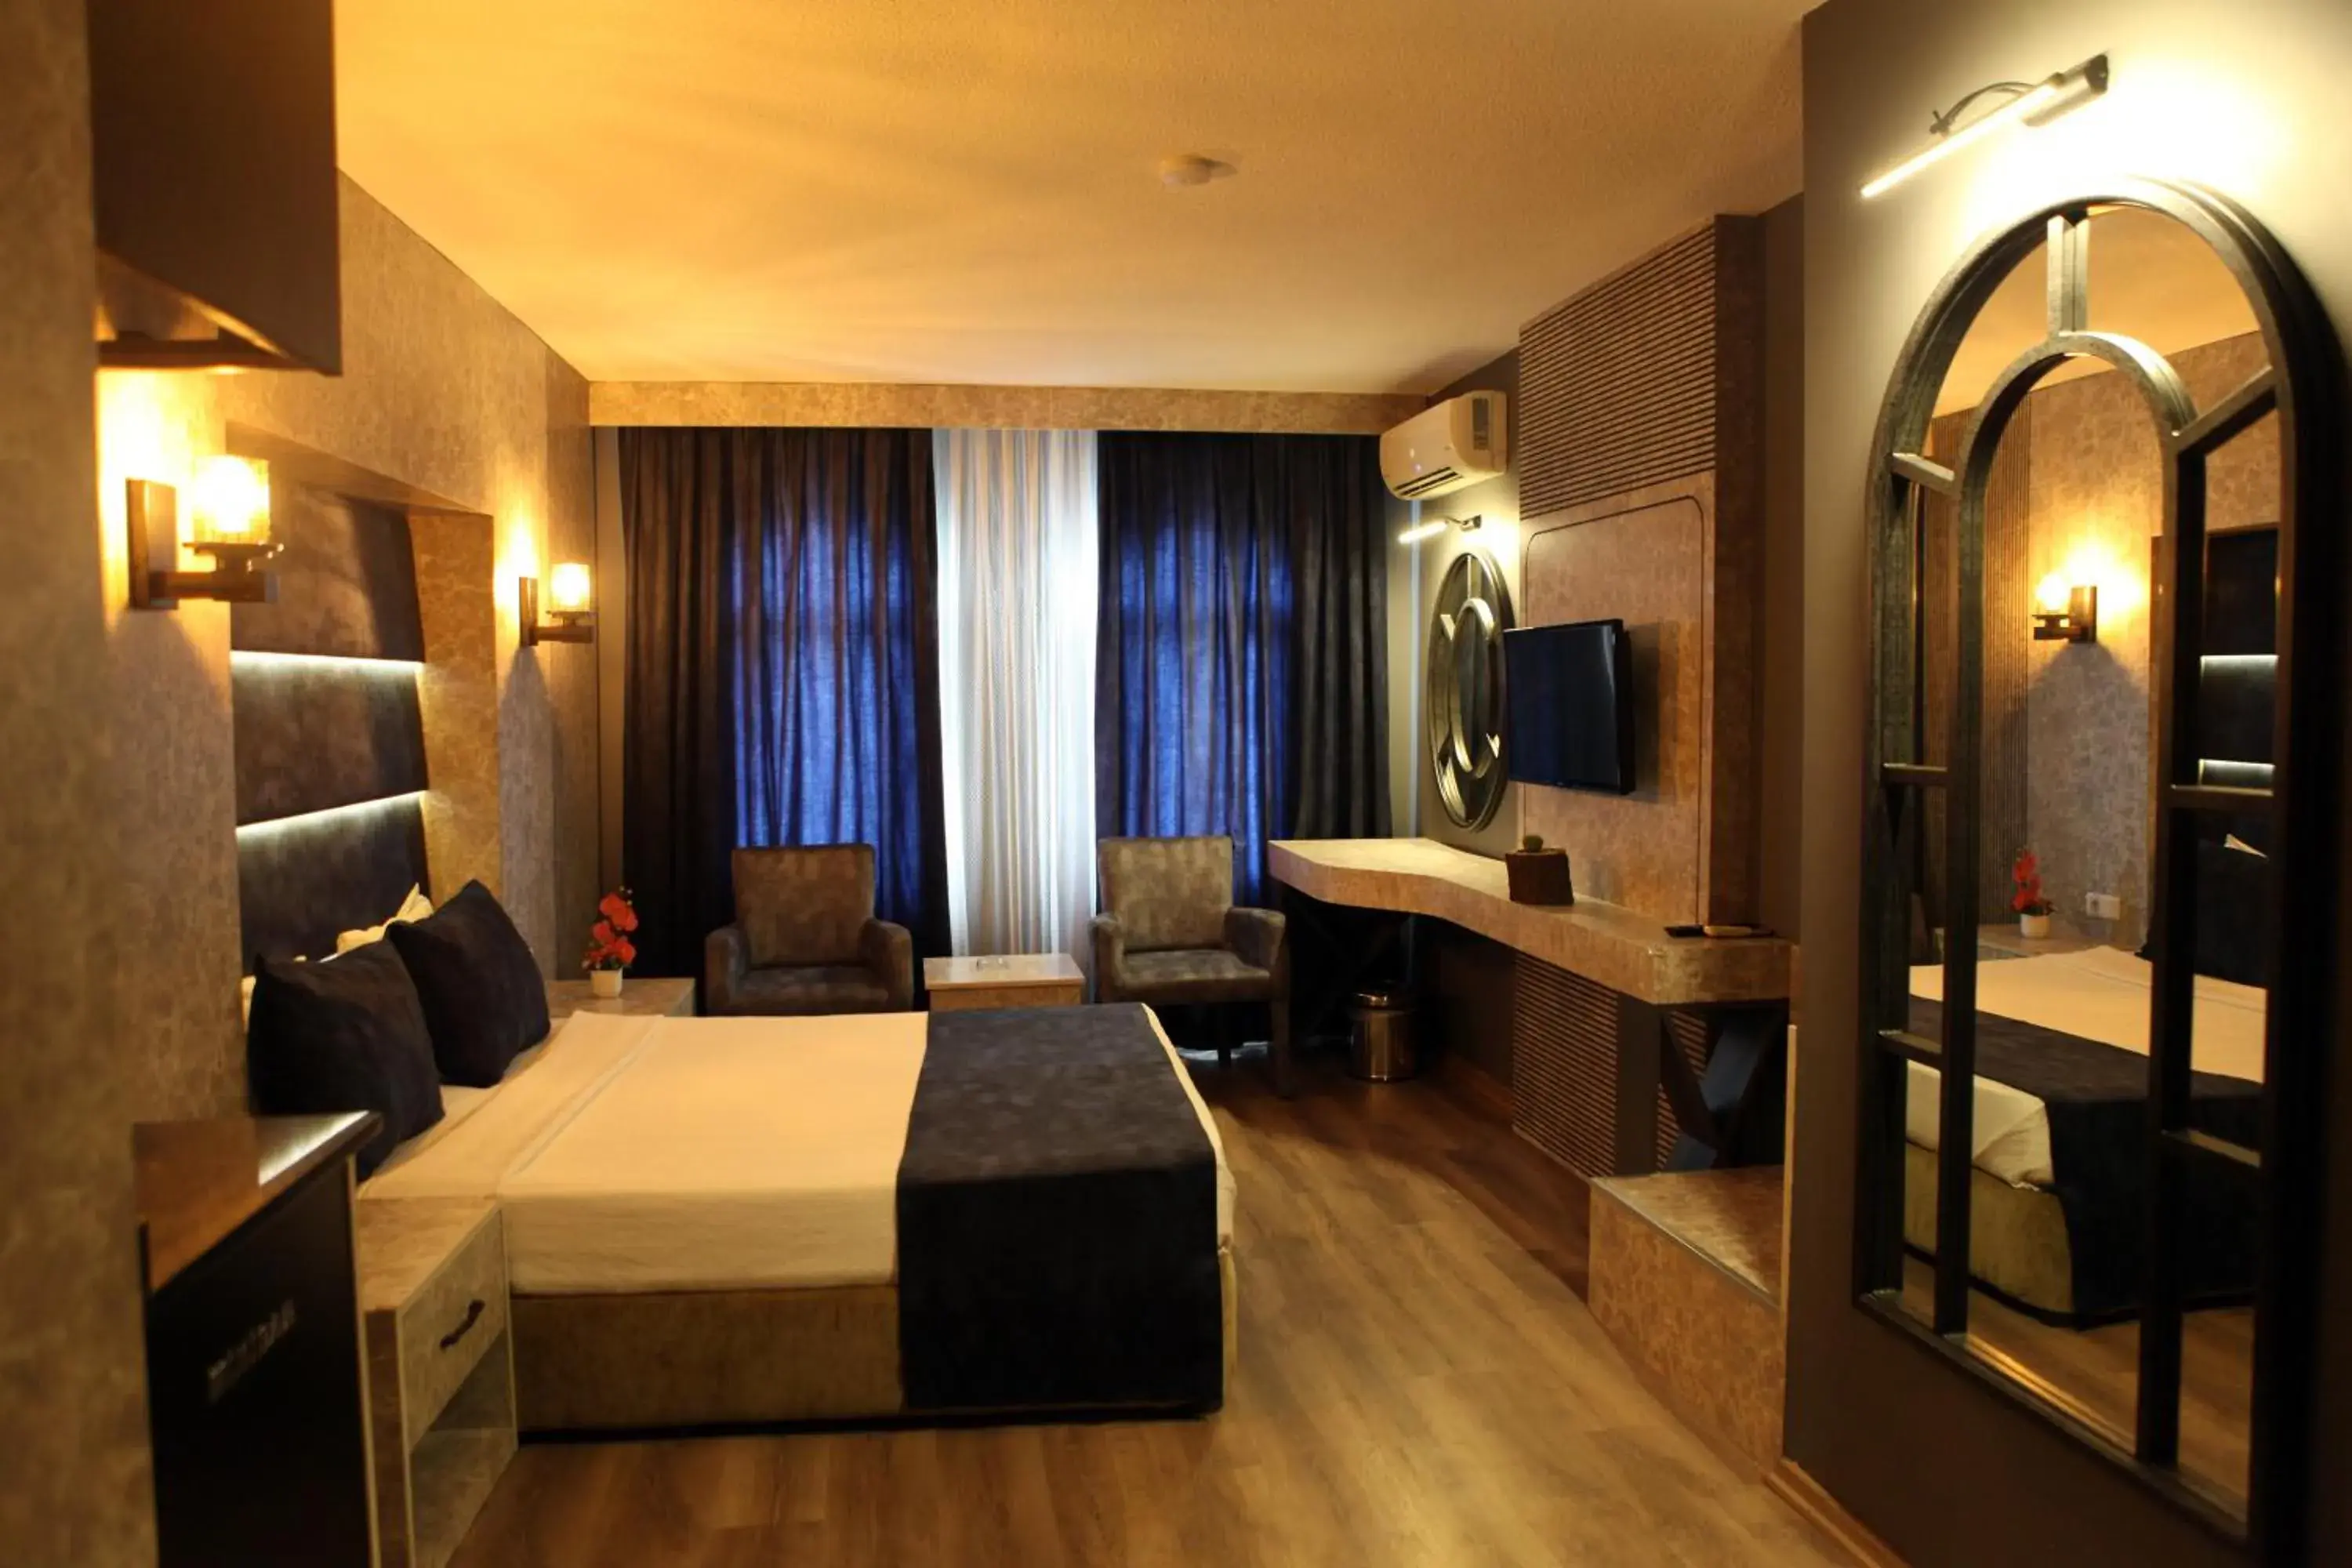 Bed in Aktas Hotel